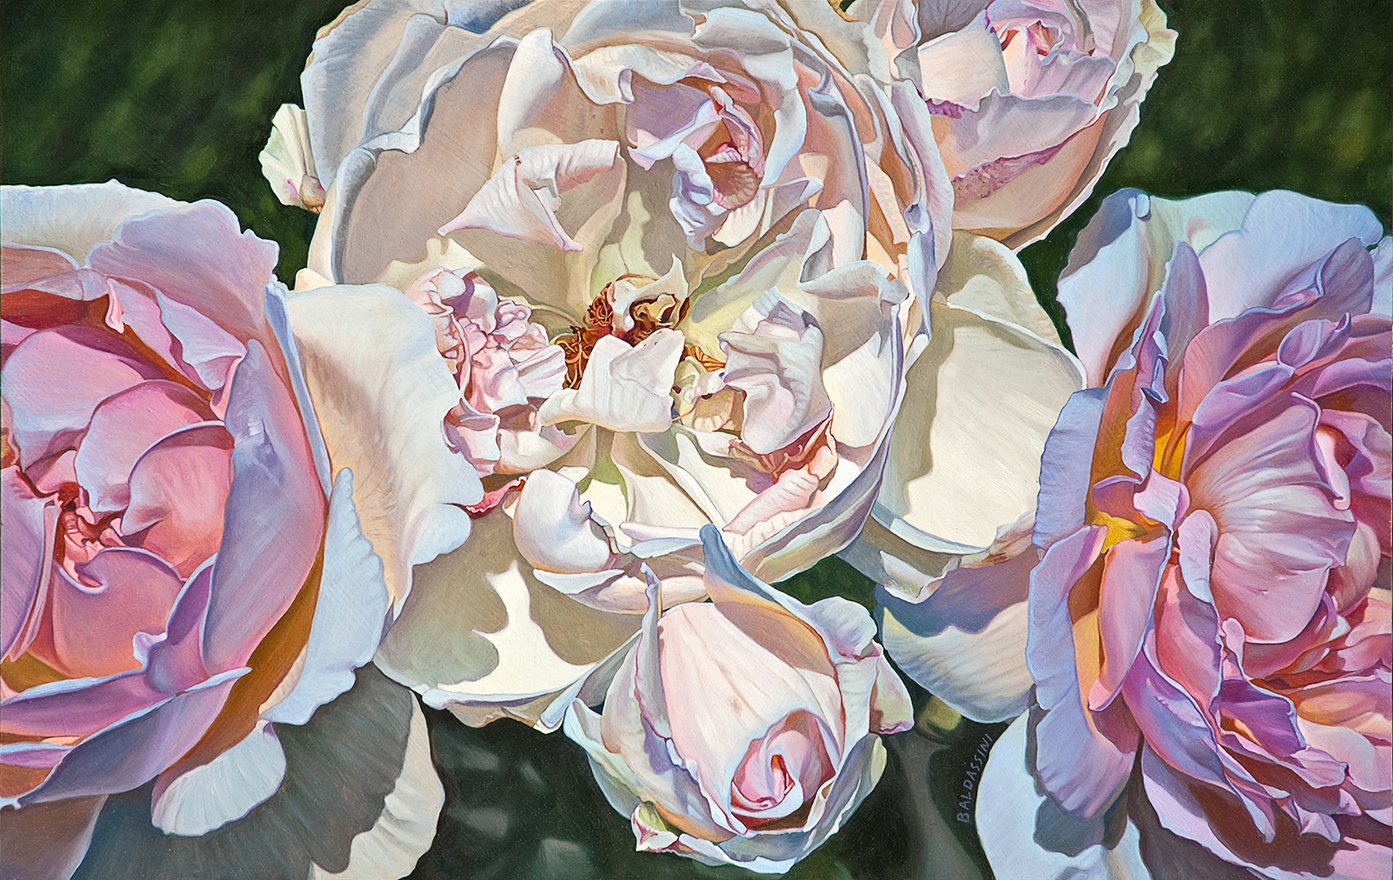 baldassini-floral-flower-garden-oil-painting-white-pink-roses